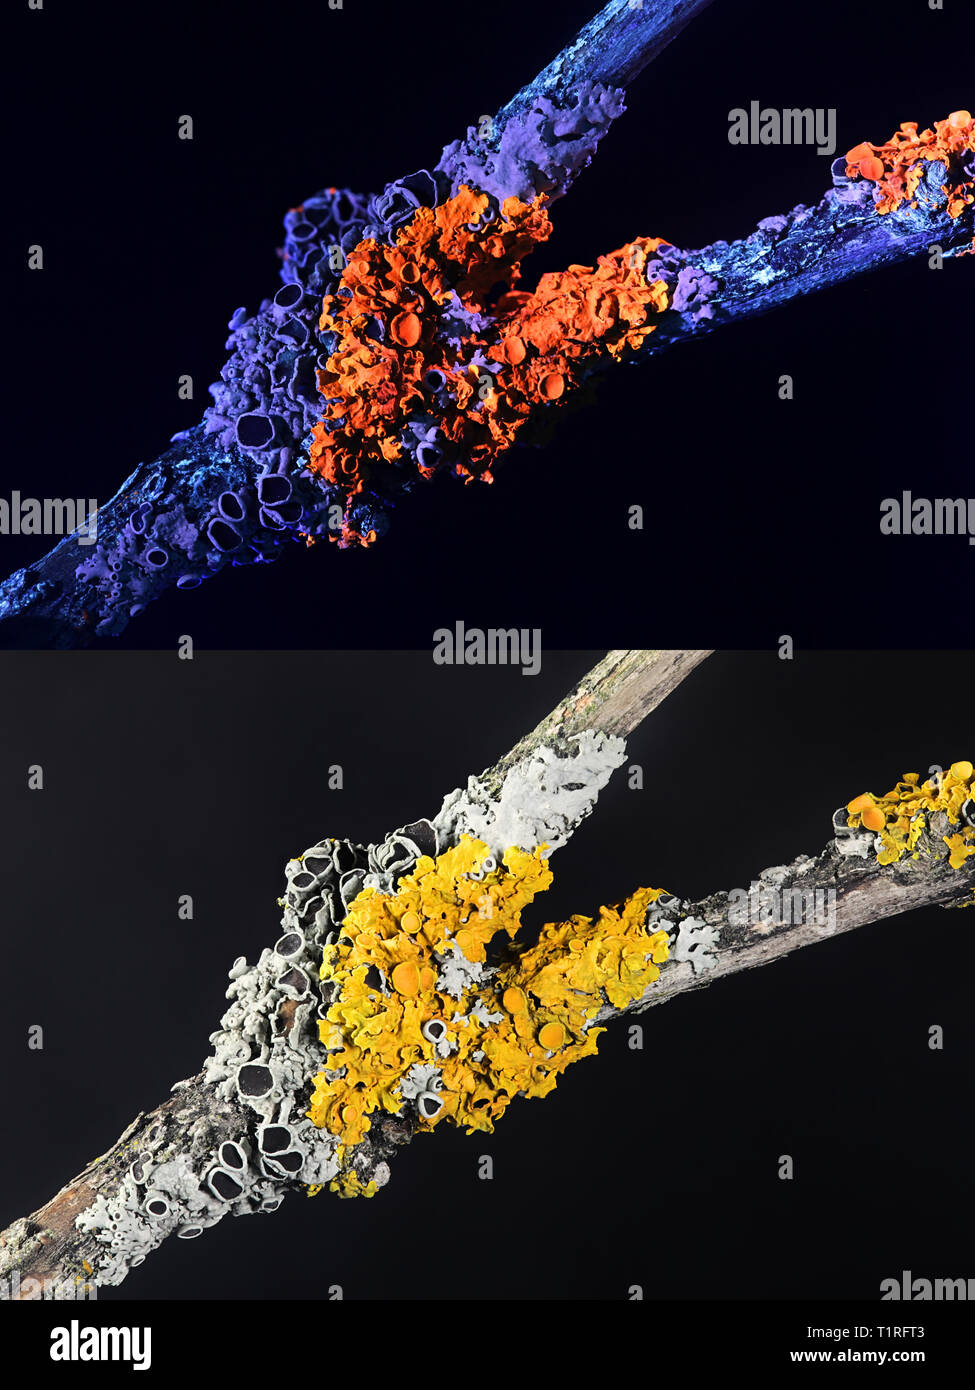 Comune di Riva arancione lichen e annoso lichene Rosette fotografato a luce ultravioletta (365 nm). Abbassare immagine fotografata in condizioni normali di luce visibile. Foto Stock